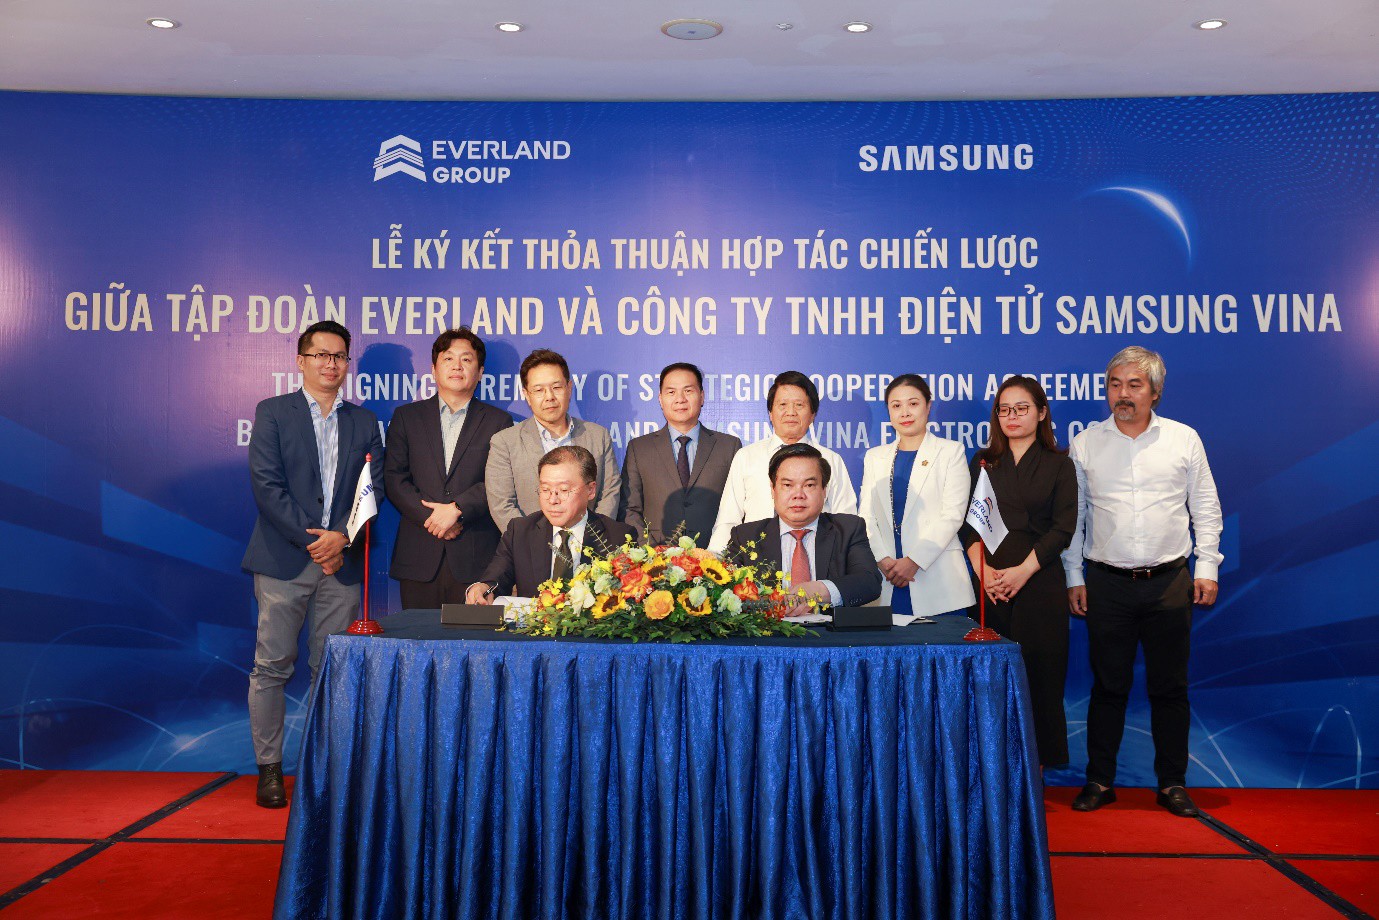 Chủ tịch HĐQT Tập đoàn Everland và Chủ tịch Công ty TNHH Điện tử Samsung Vina ký kết Thỏa thuận hợp tác chiến lược toàn diện giữa hai doanh nghiệp.